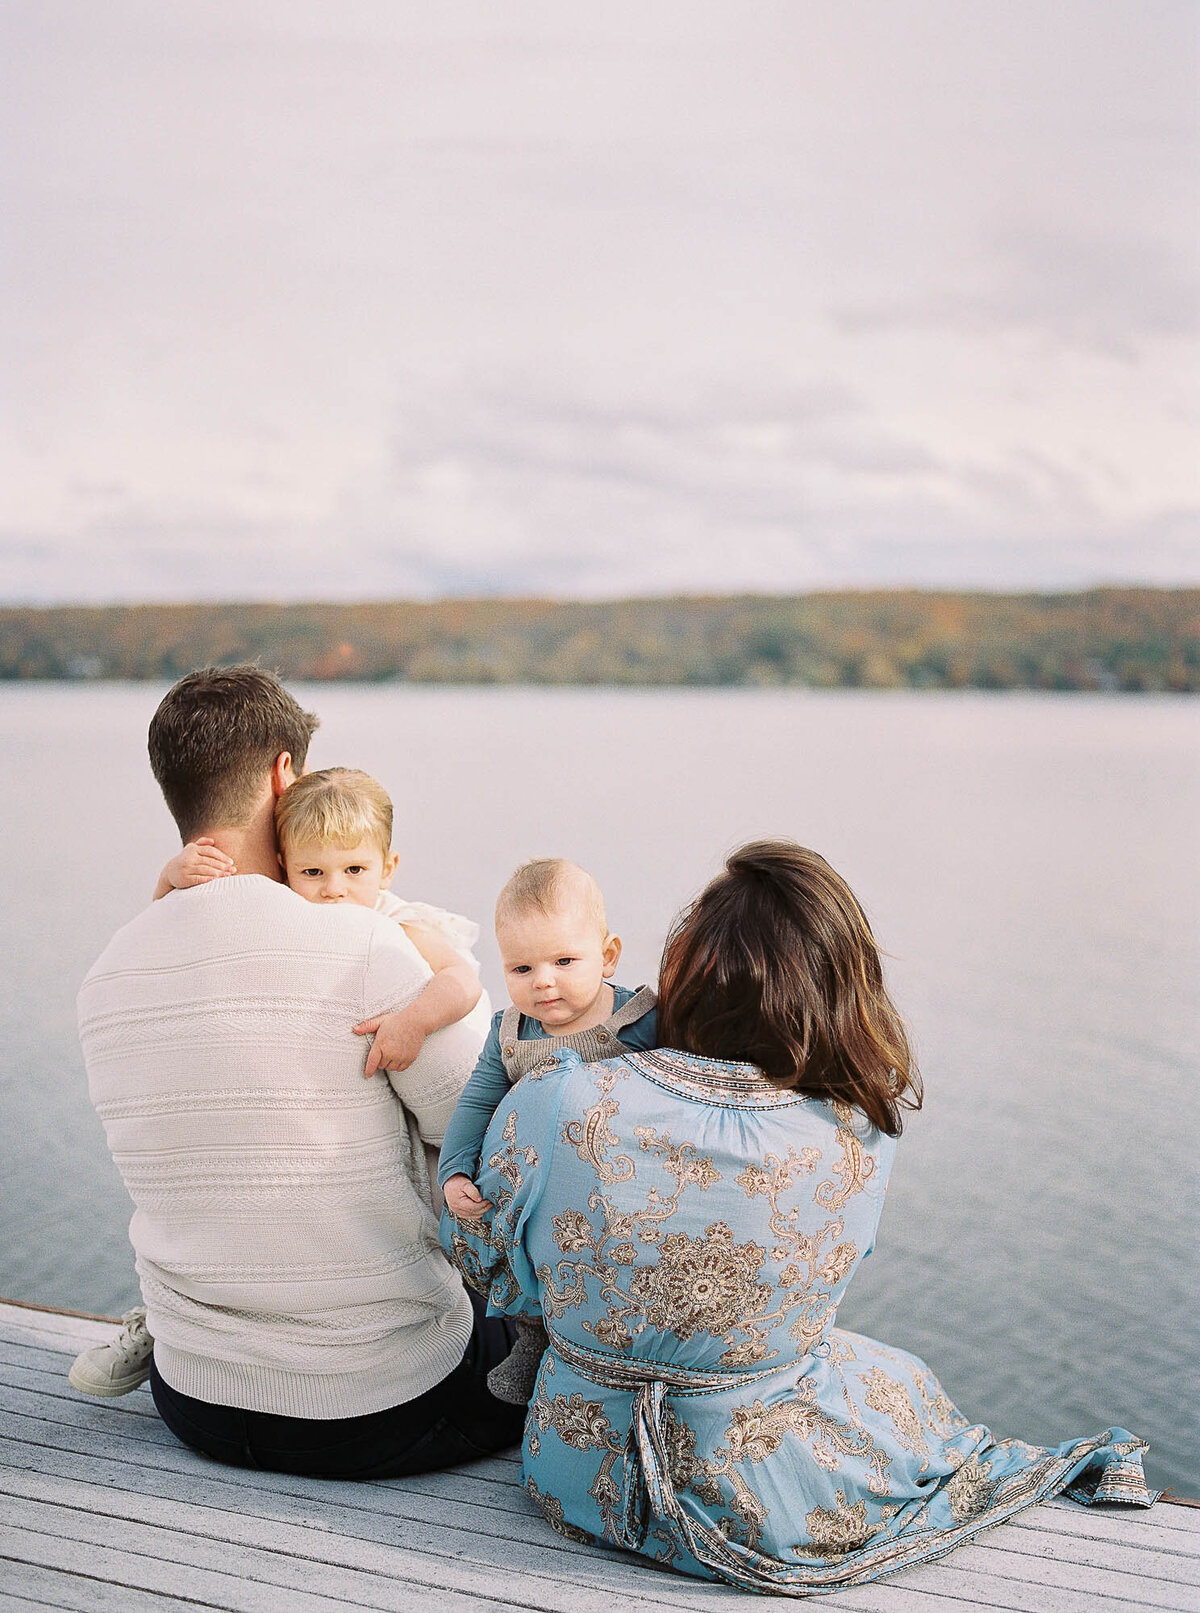 Ali-Reed-Photography-Alexandra-Elise-Photography-Film-Lifestyle-Family-Portrait-Photographer-Canandaigua-New-York-013